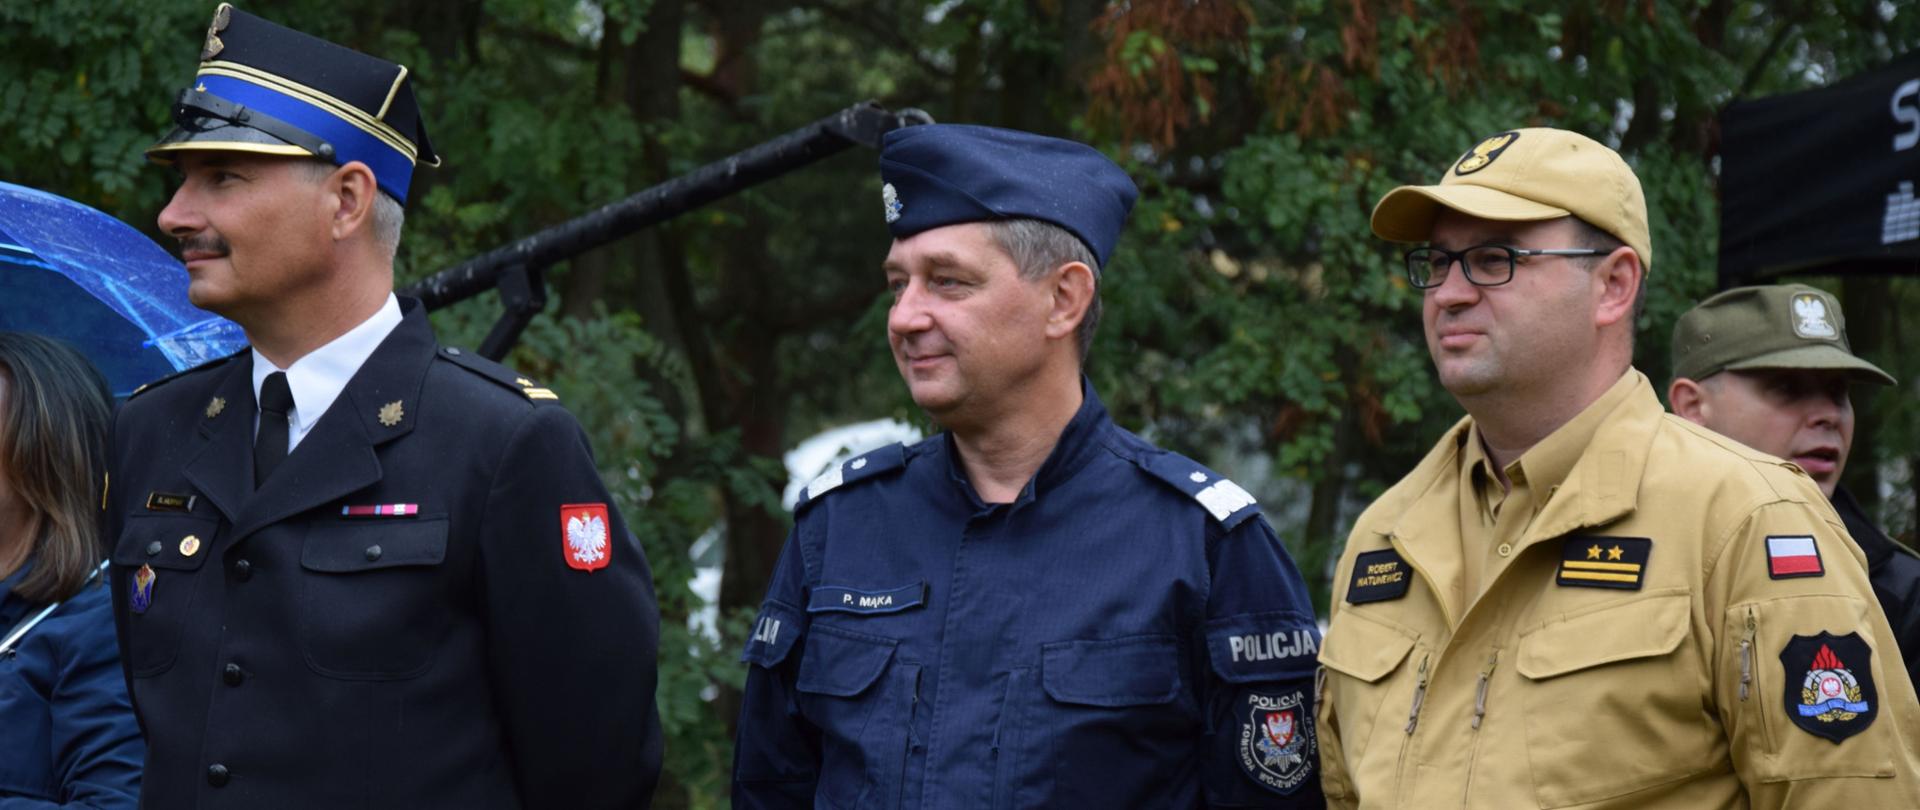 trzech mężczyzn stoi w szeregu, z prawej strażak w jasnym mundurze i w czapeczce oraz w okularach, w środki policjant w niebieskim mundurze i furażerce, po lewej strażak w mudnurze wyjściowym i rogatywce, w tle drzewa